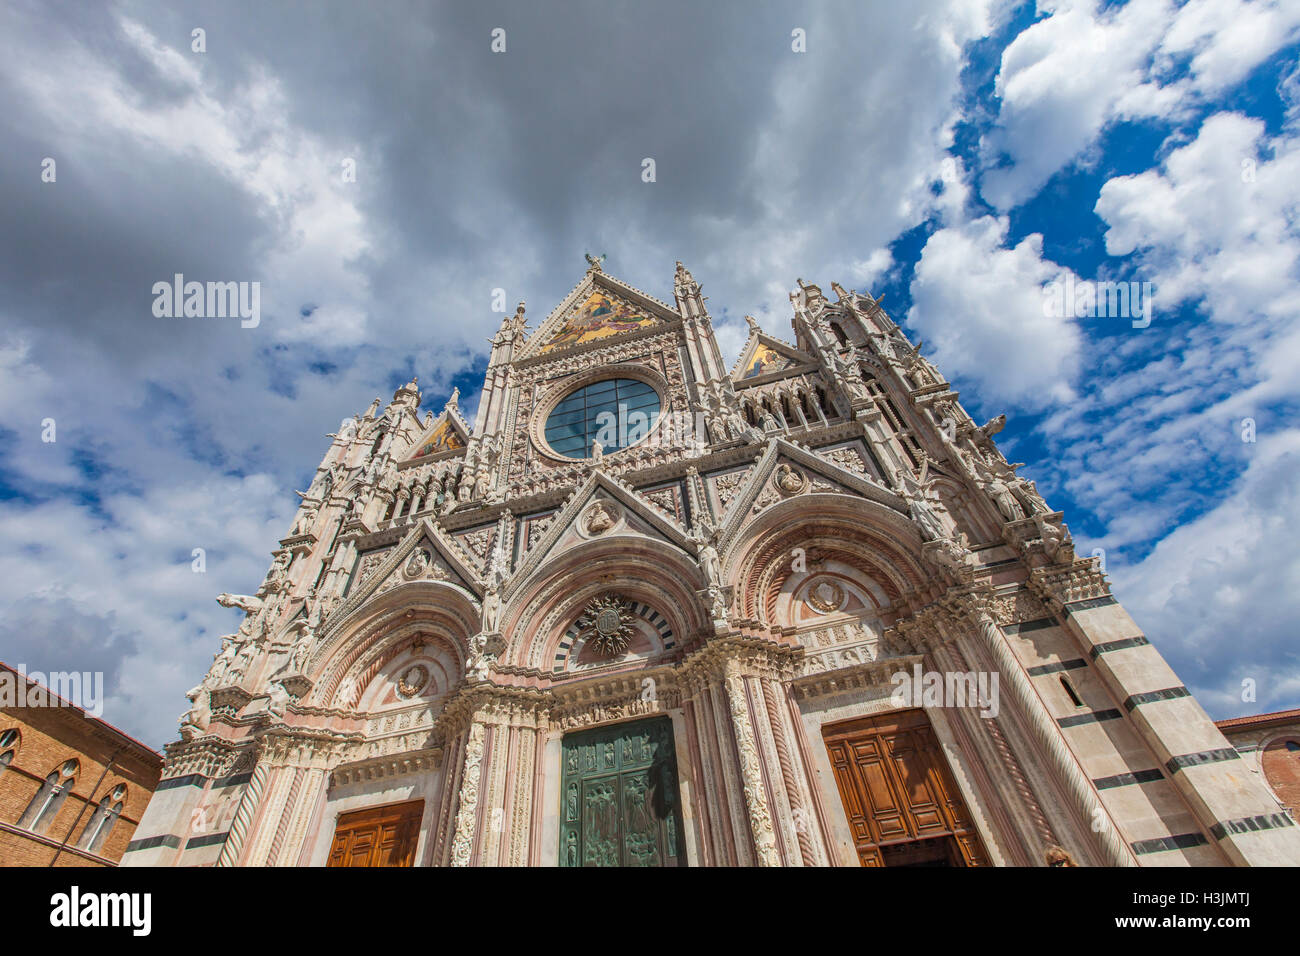 Exteriores y detalles arquitectónicos del Duomo, la catedral de Siena, Italia Foto de stock